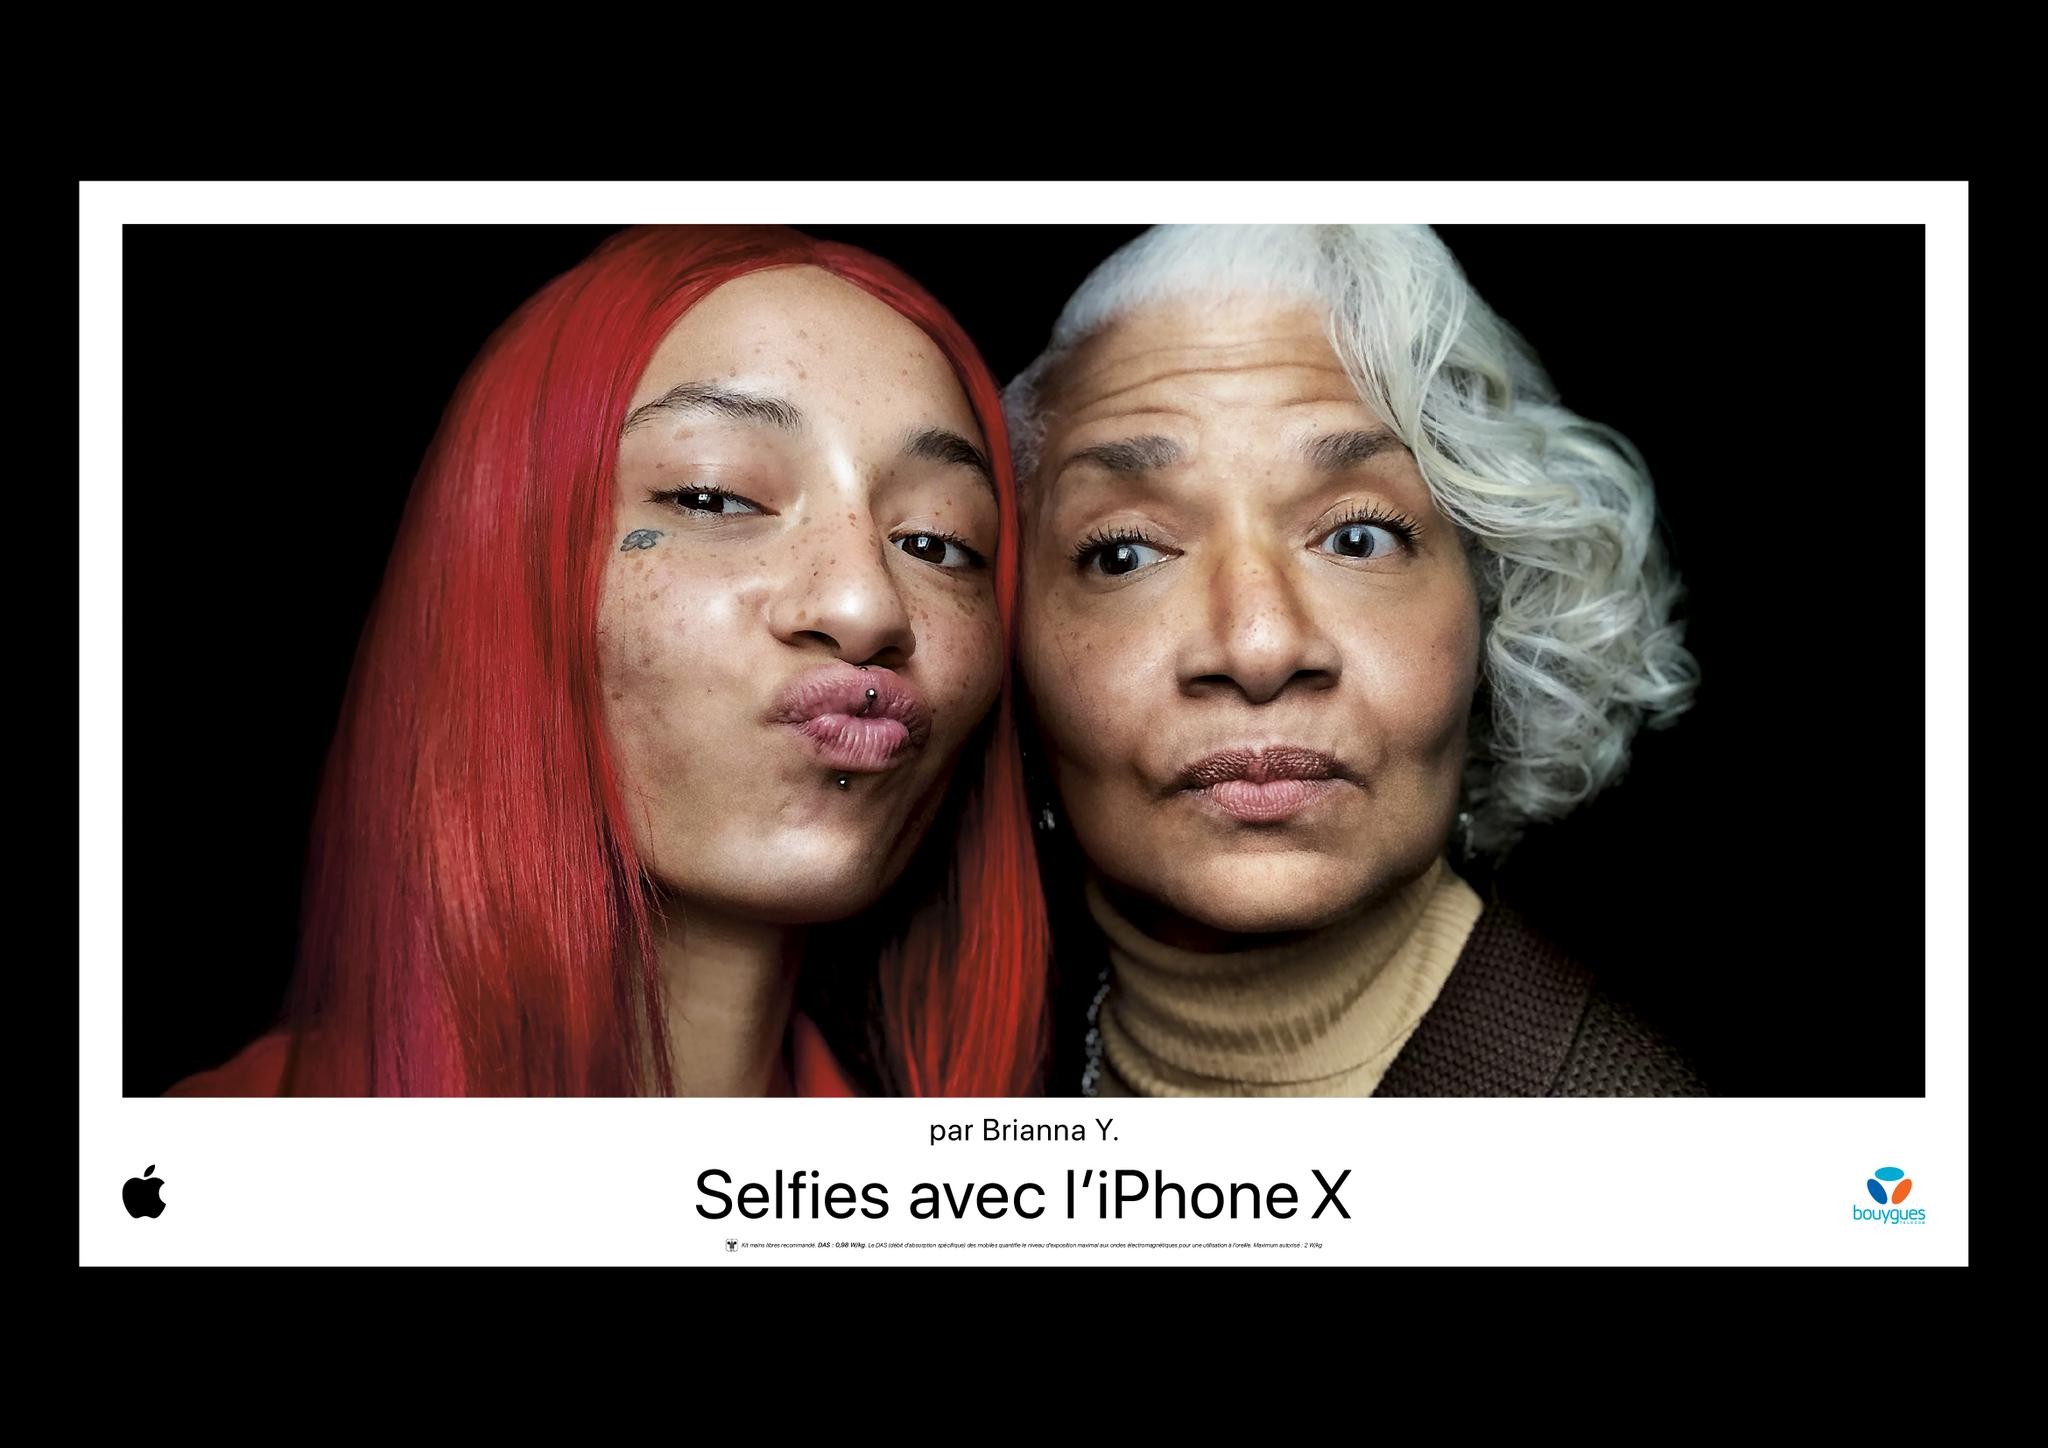 Selfies on iPhone X